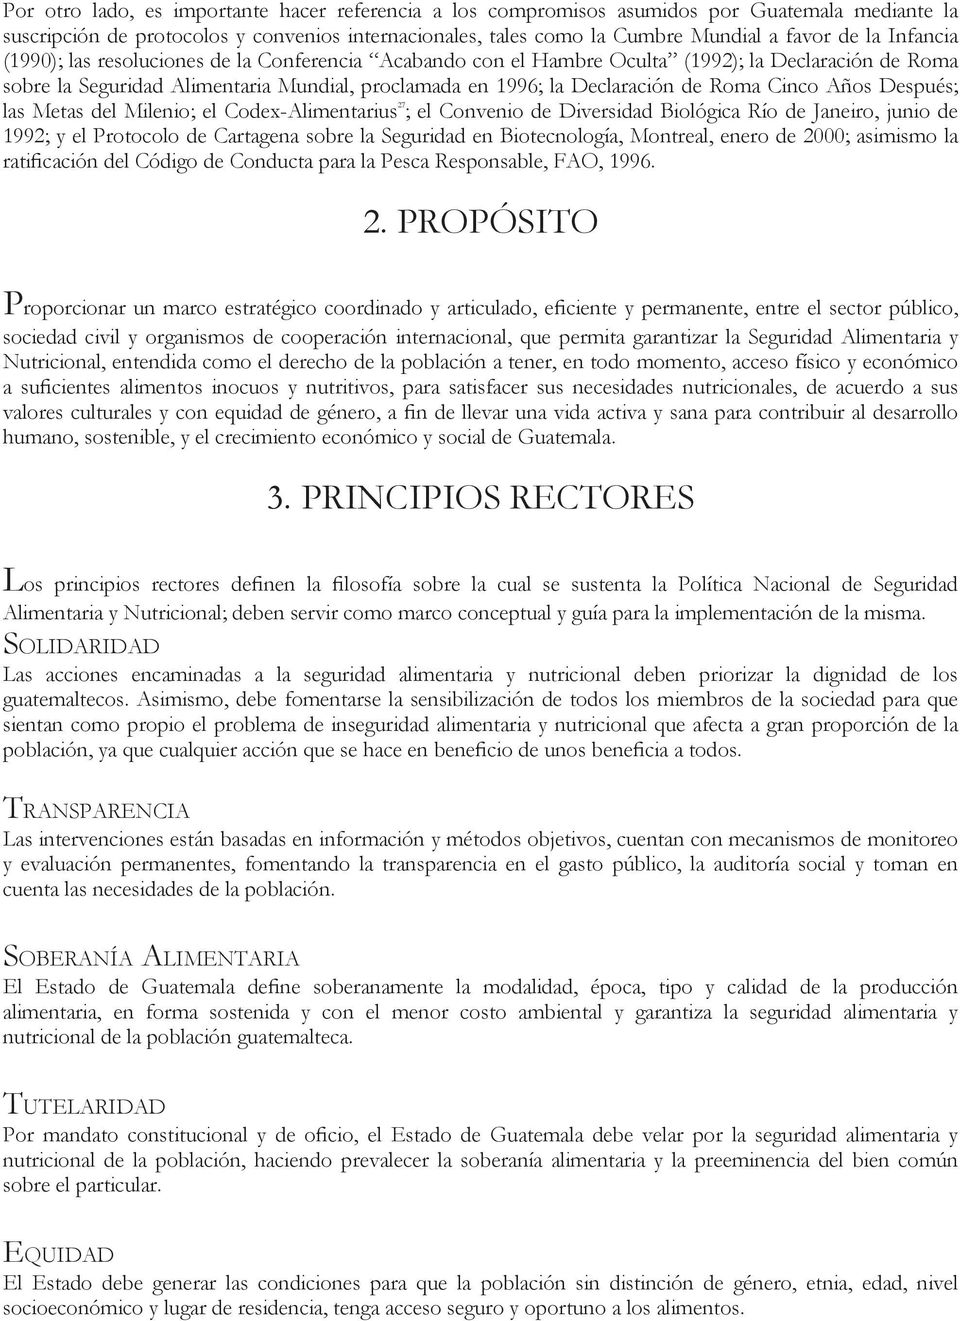 Cinco Años Después; las Metas del Milenio; el Codex-Alimentarius 27 ; el Convenio de Diversidad Biológica Río de Janeiro, junio de 1992; y el Protocolo de Cartagena sobre la Seguridad en